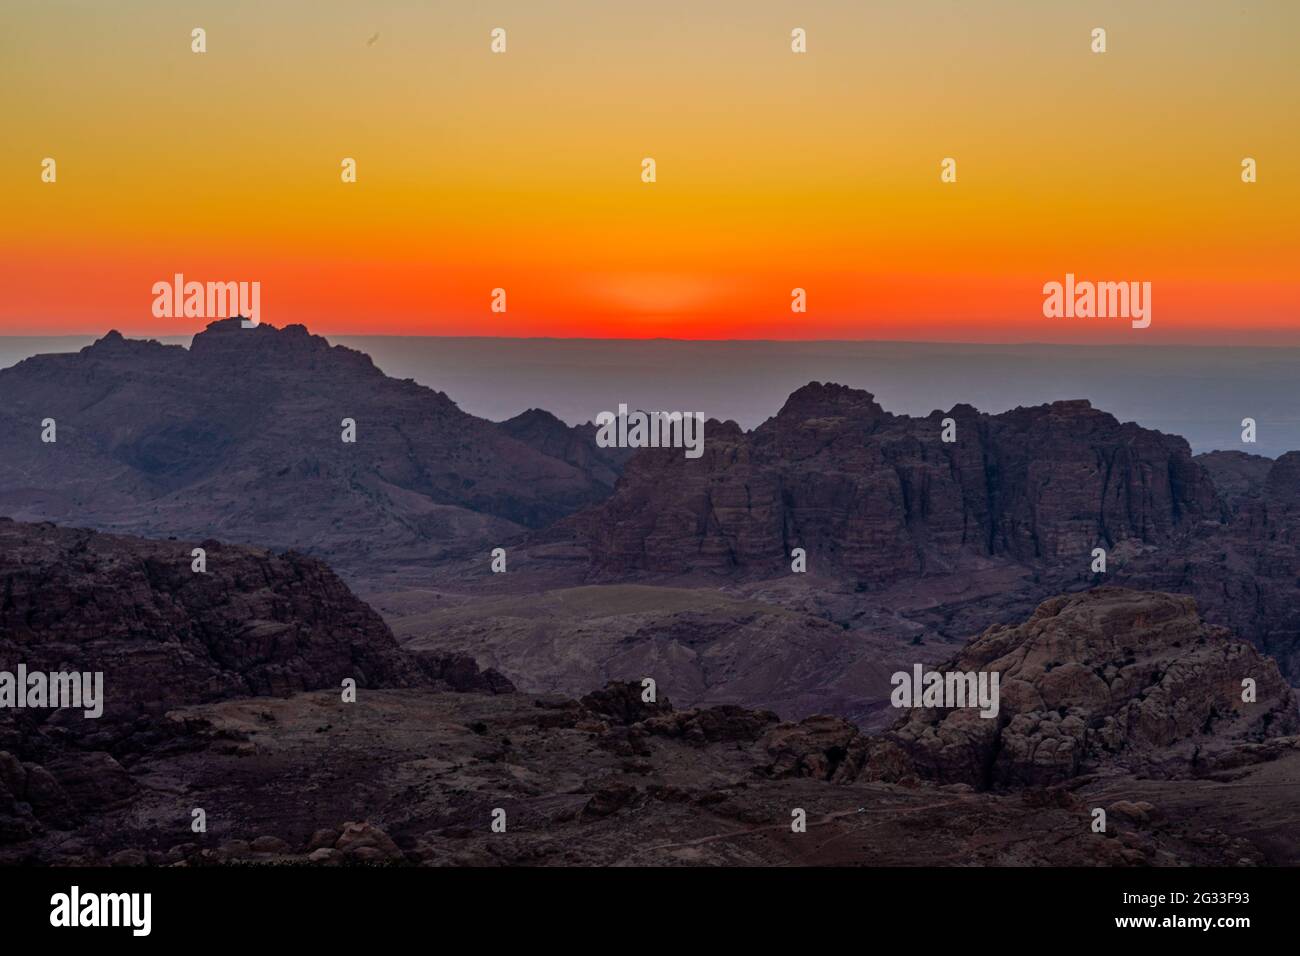 Rosso-arancio scenico colorato tramonto sulle montagne e la valle a Wadi Araba, Giordania Foto Stock